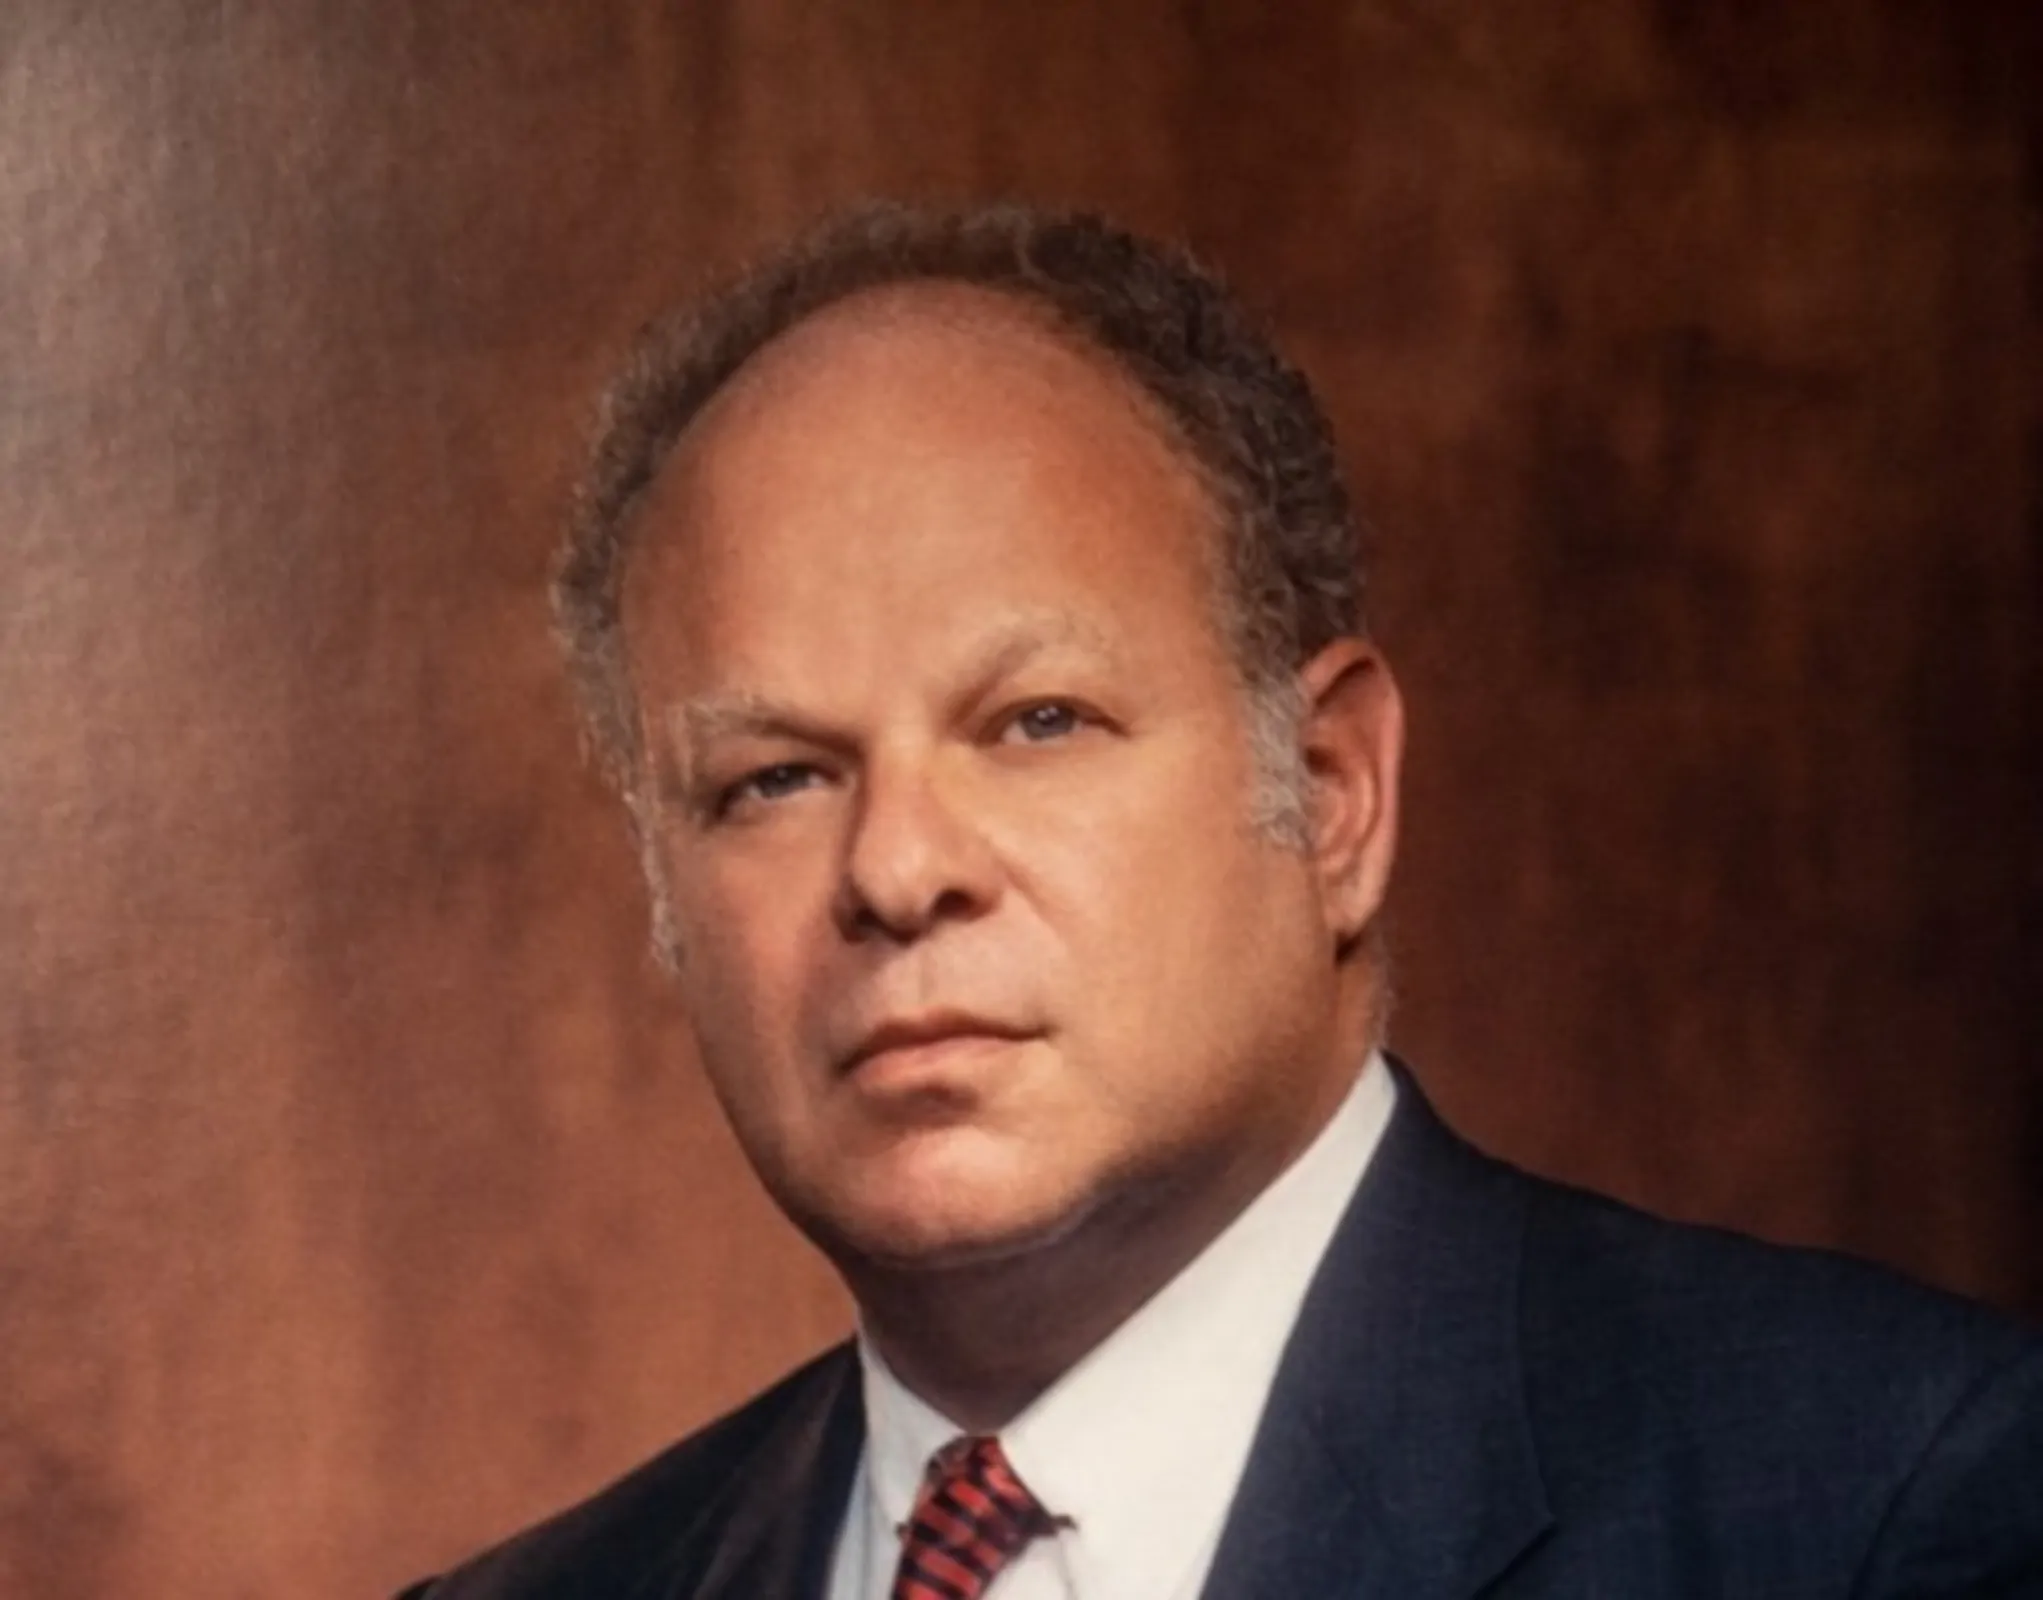 Professor Martin Seligman